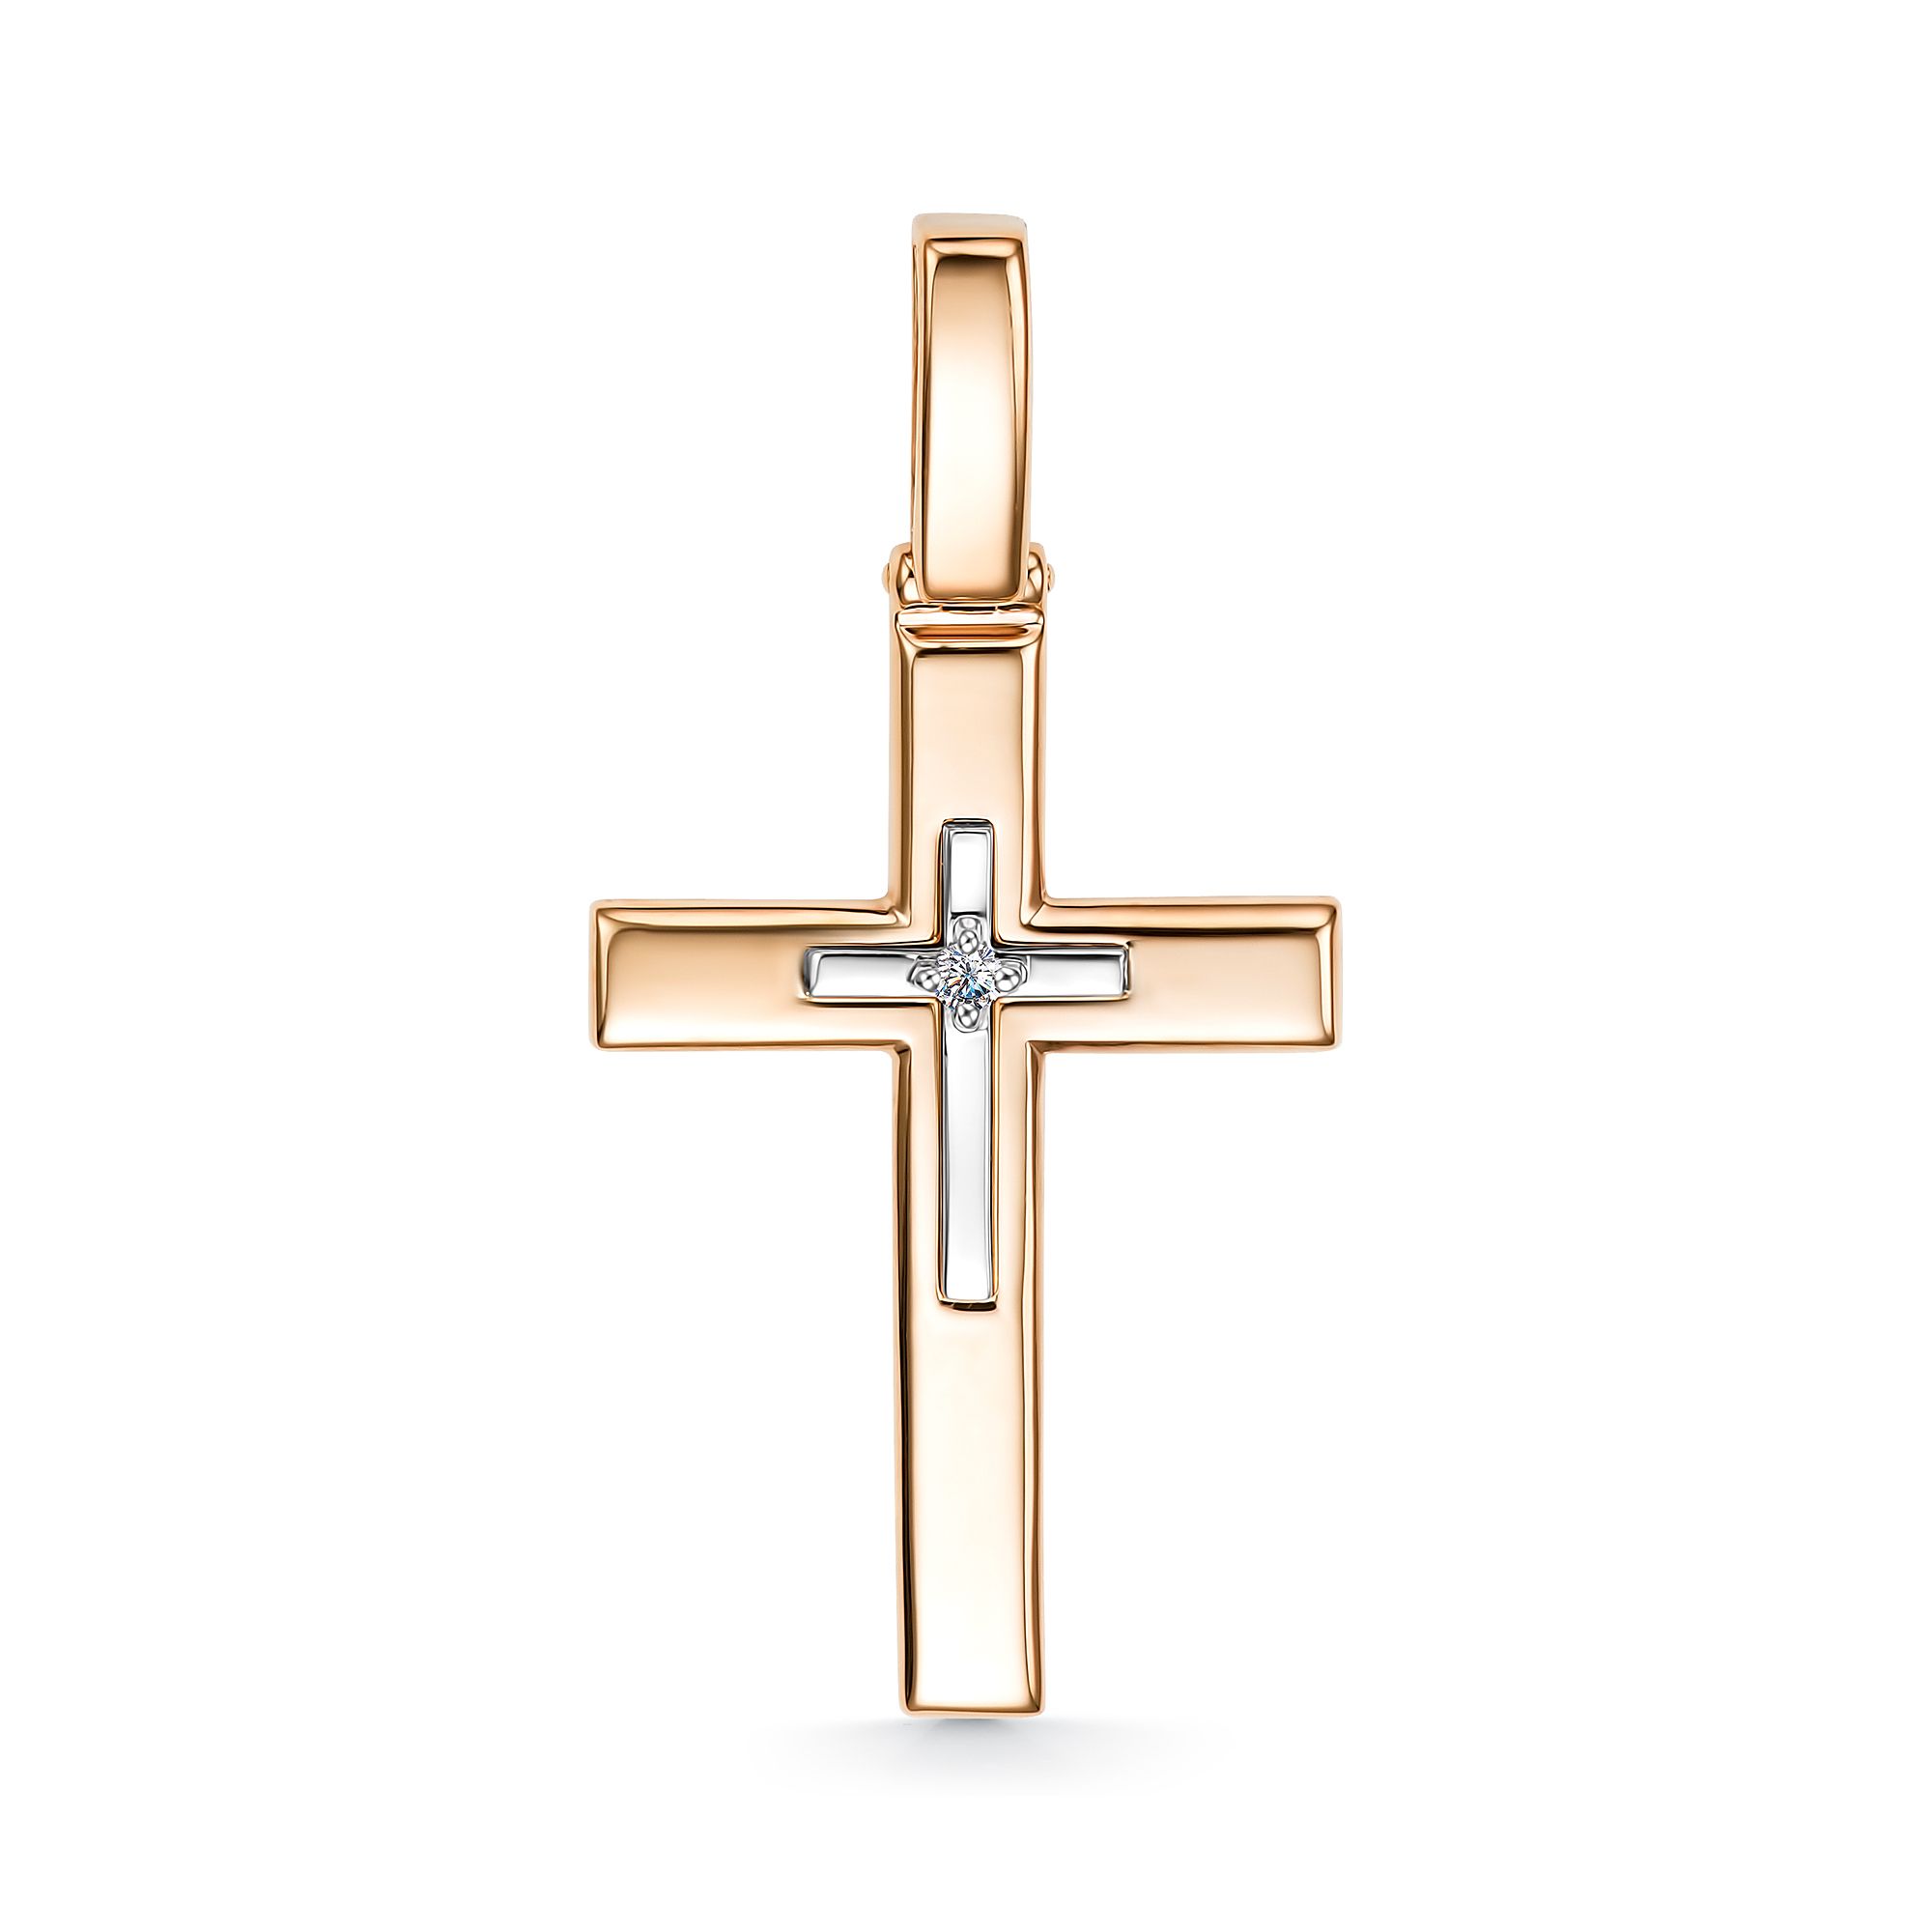 Женский золотой декоративный крестик Алькор 35268-100 с бриллиантом —купить в AllTime.ru — фото